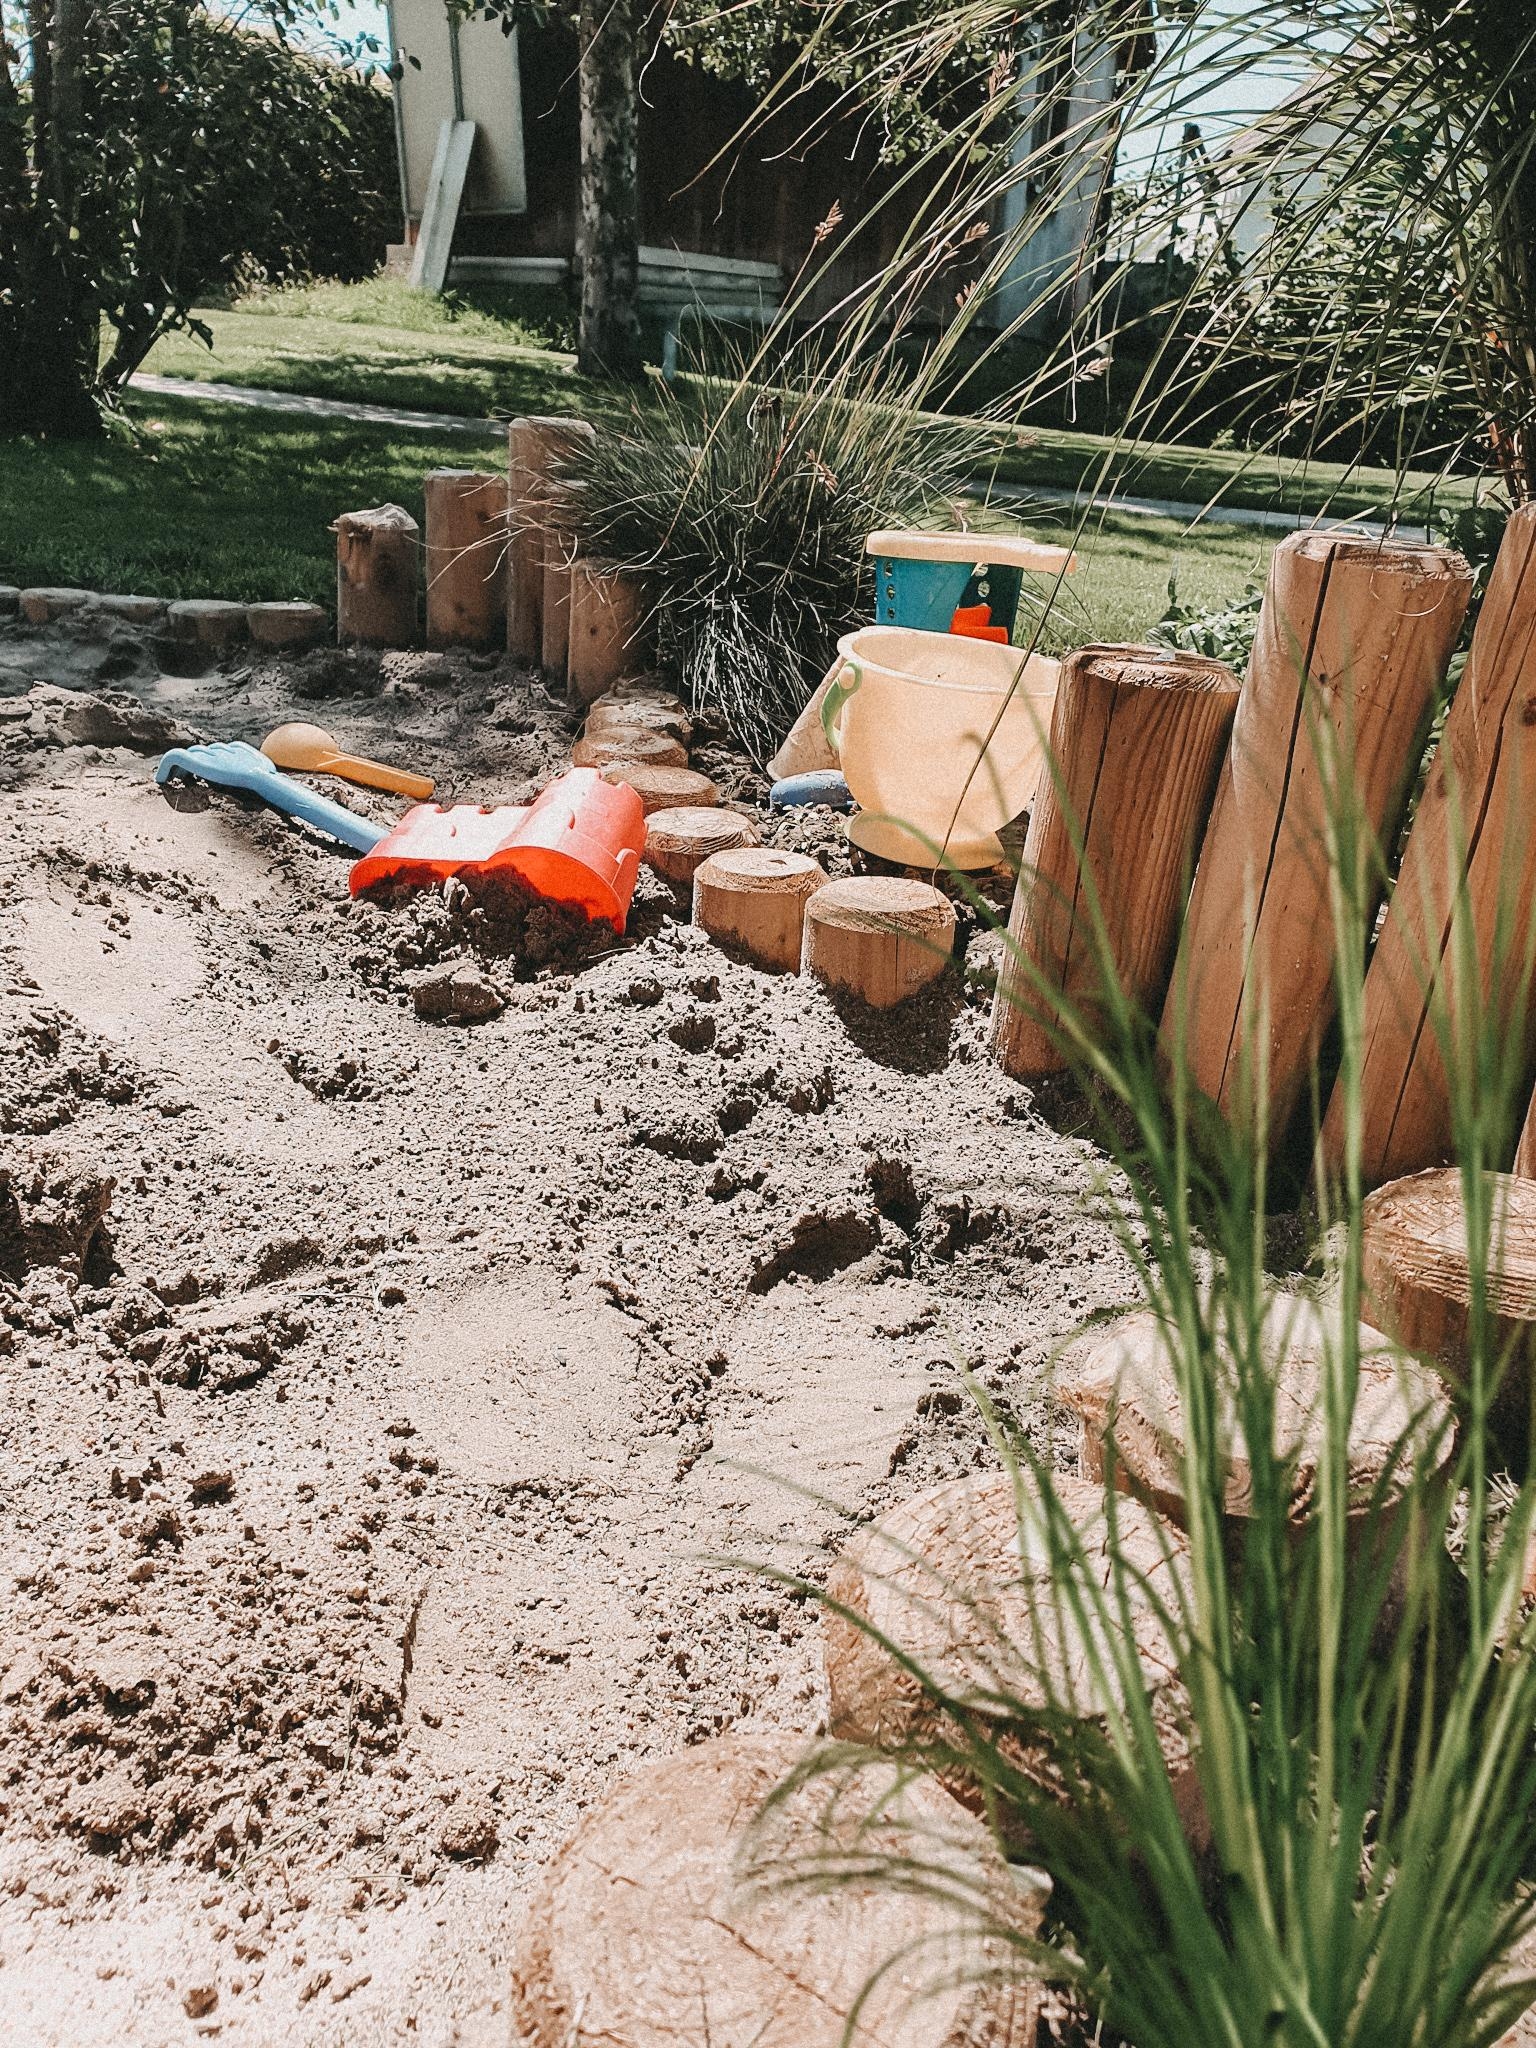 Mein DIY Sandkasten ist durch lange Wetterverzögerung endlich fertig ✌
#diy #outdoor #inspo